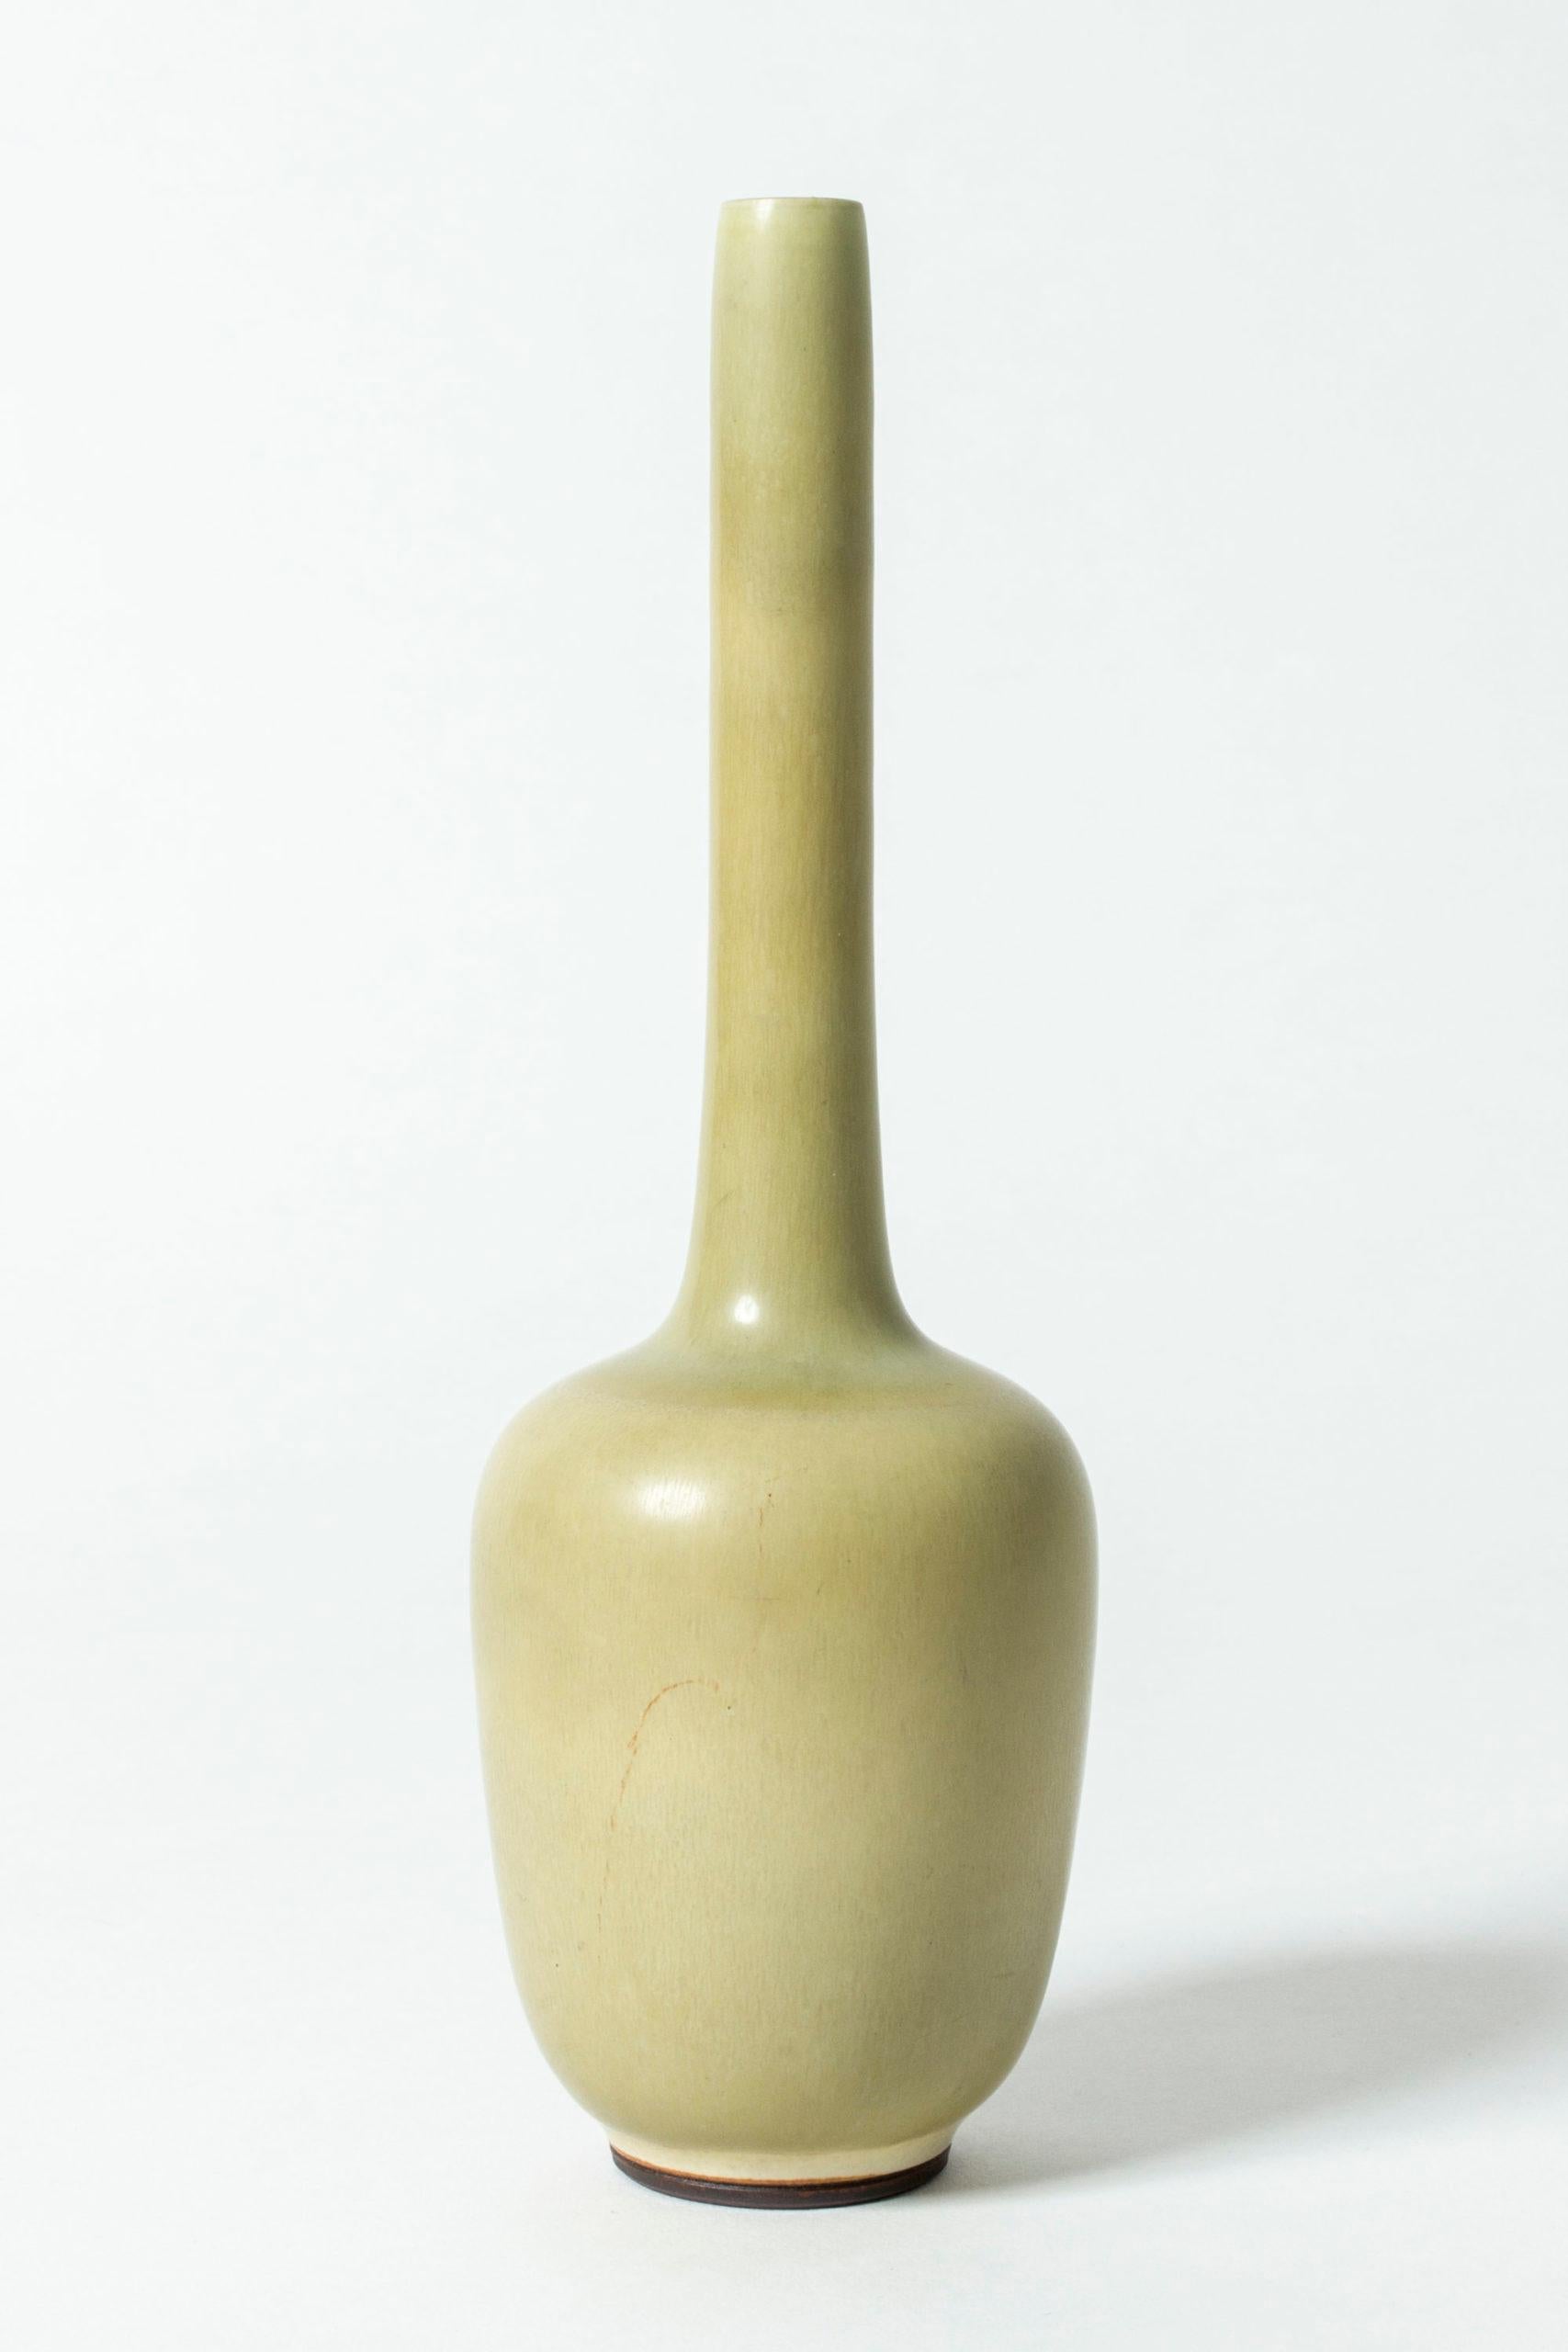 Vase en grès de Berndt Friberg, d'une forme intéressante avec un col allongé et cylindrique. Glace de fourrure de lièvre jaune pâle.


À propos de Berndt Friberg : 
Berndt Friberg était un céramiste suédois, renommé pour ses vases en grès et ses